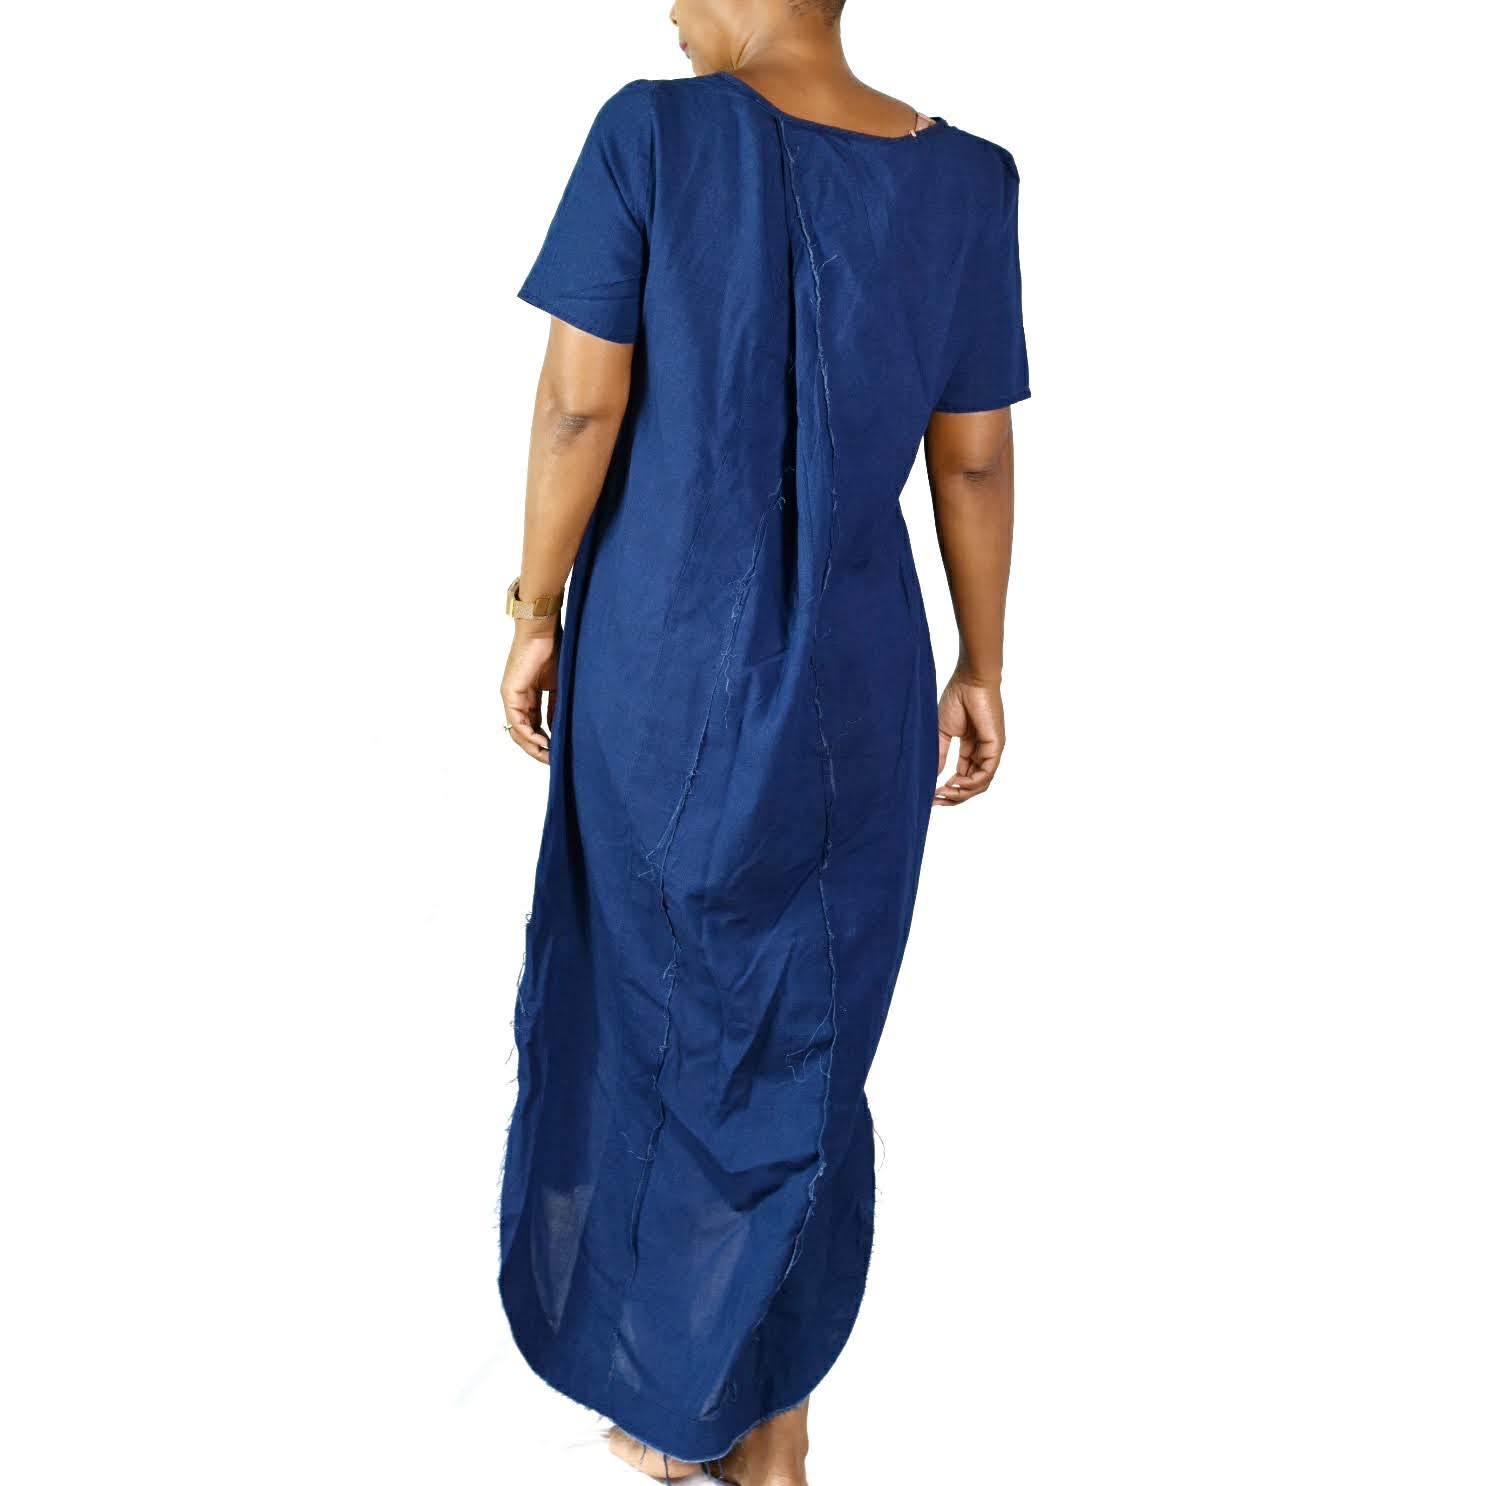 Zara Side Slit Dress Size Large